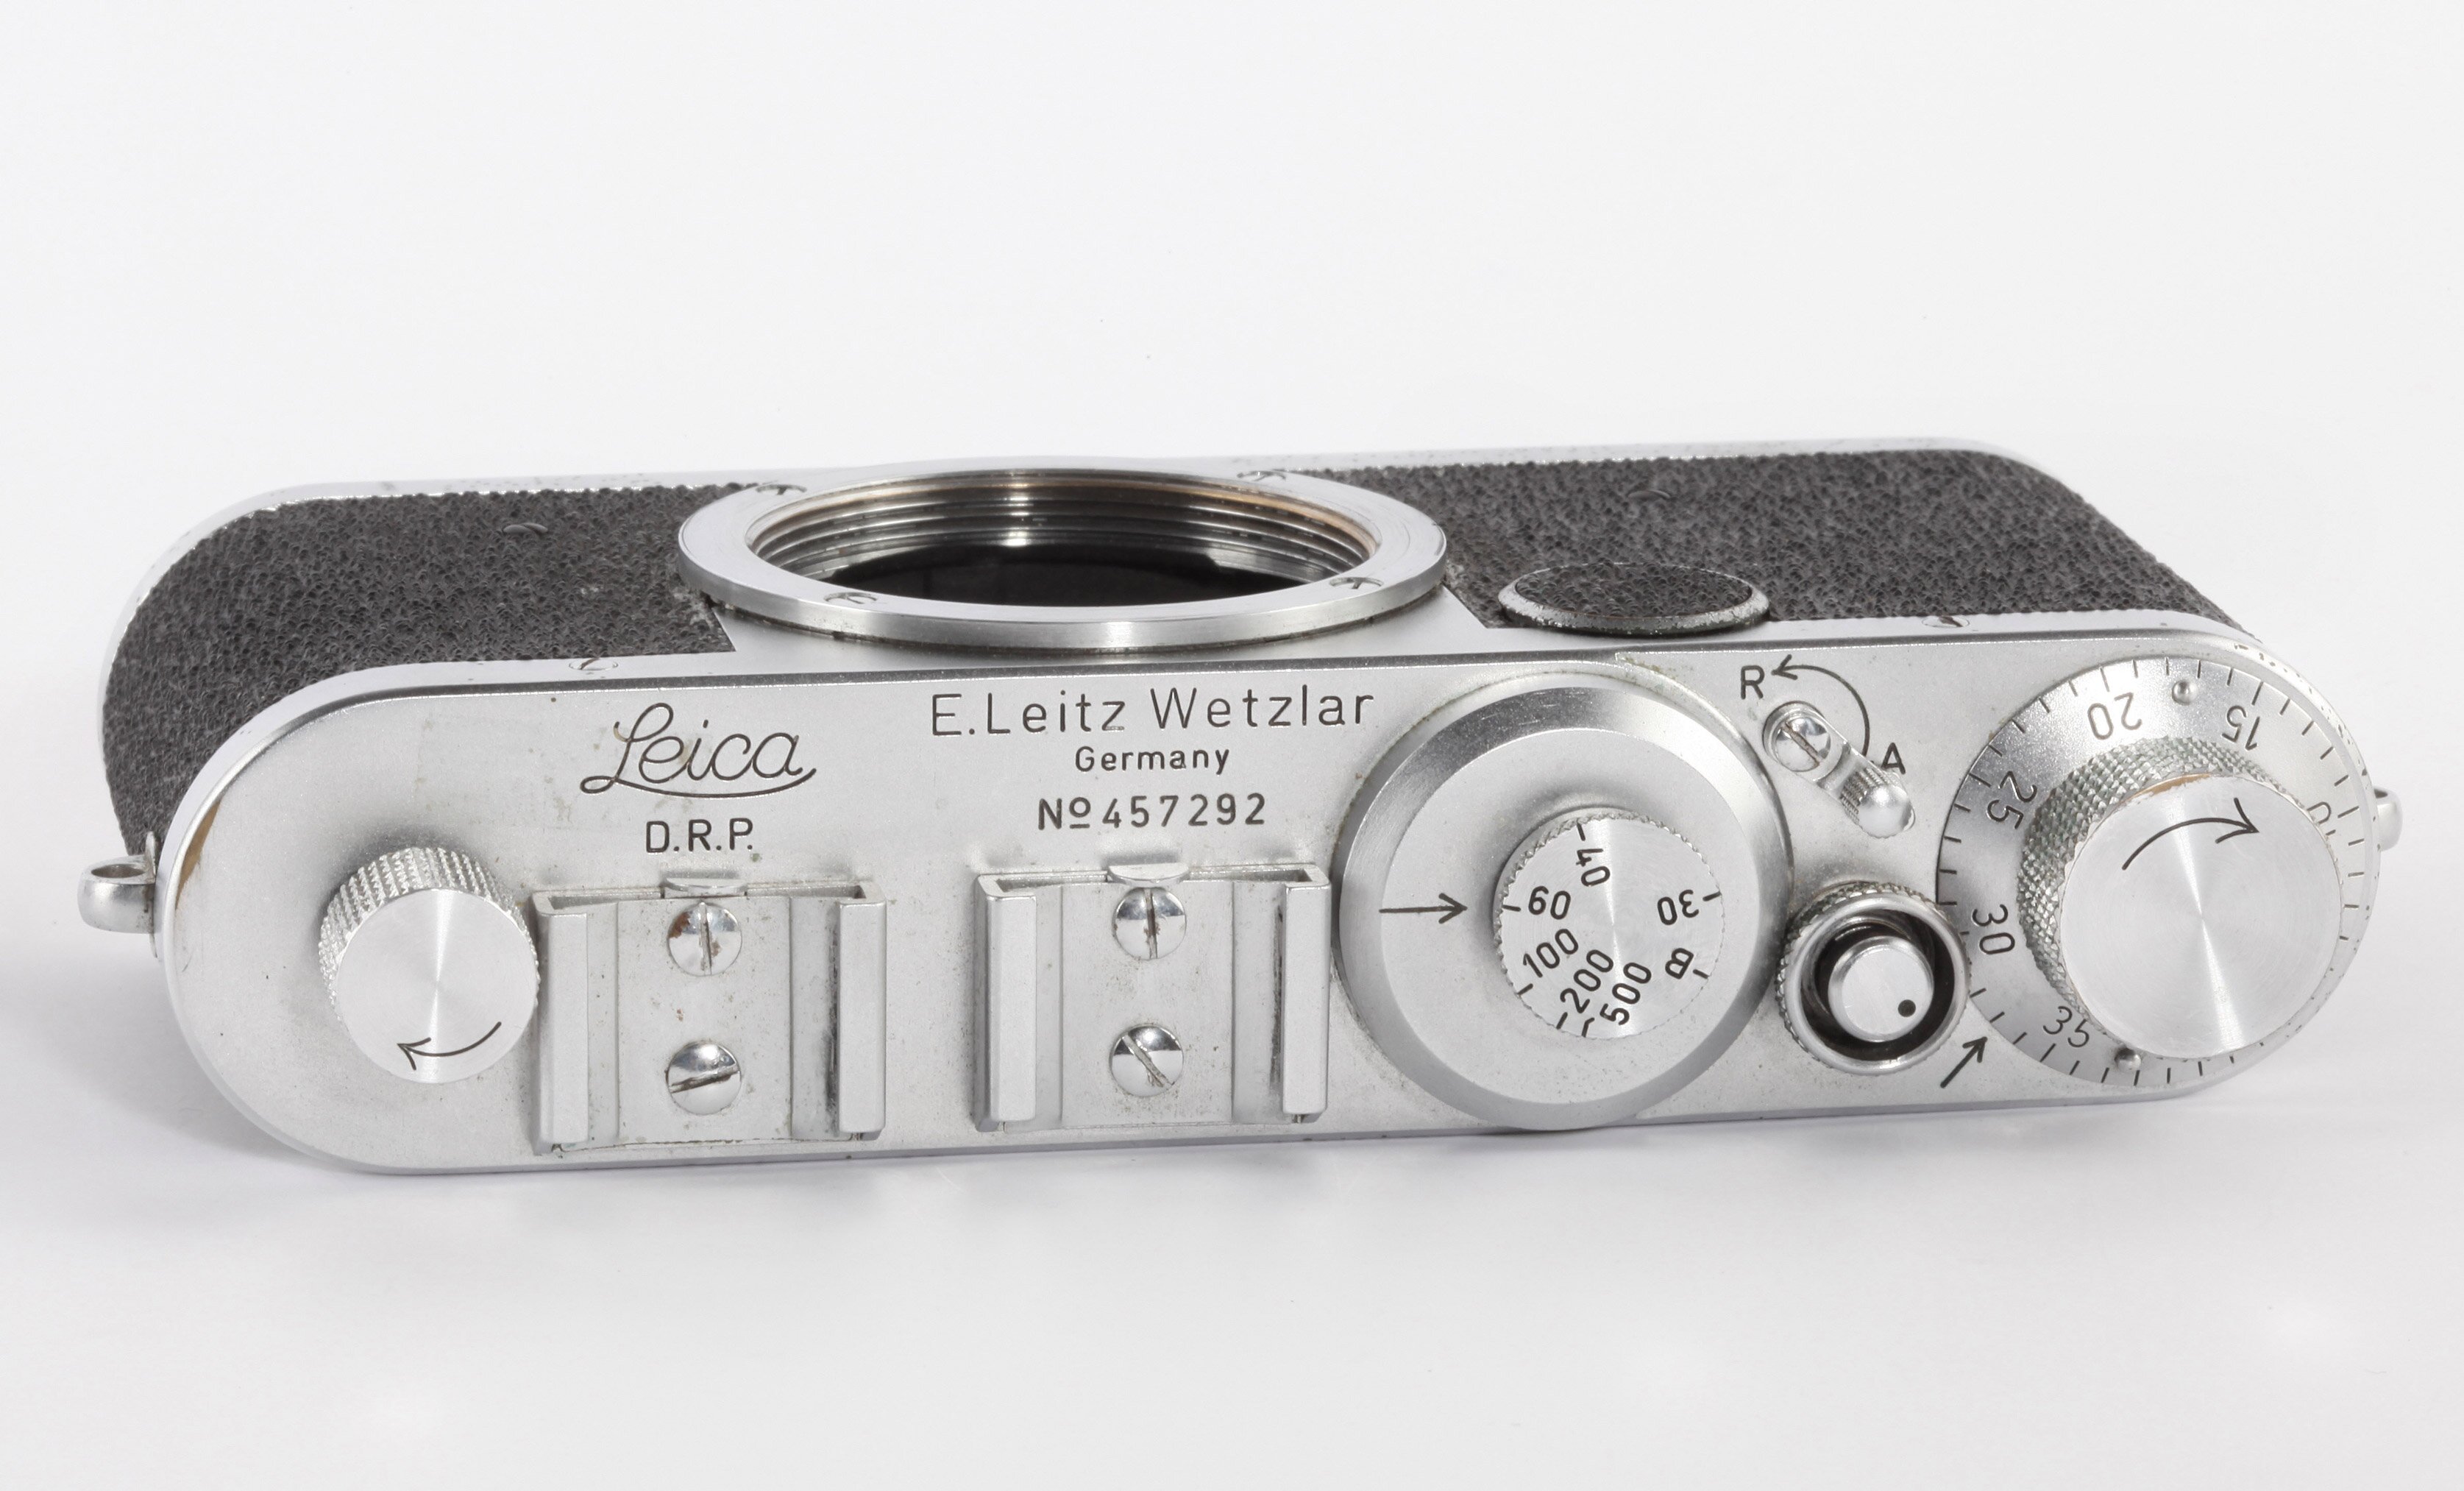 Leica Ic Gehäuse M39 LTM Bj1949/50 Shark Skin erste Serie umfast 500 Stück